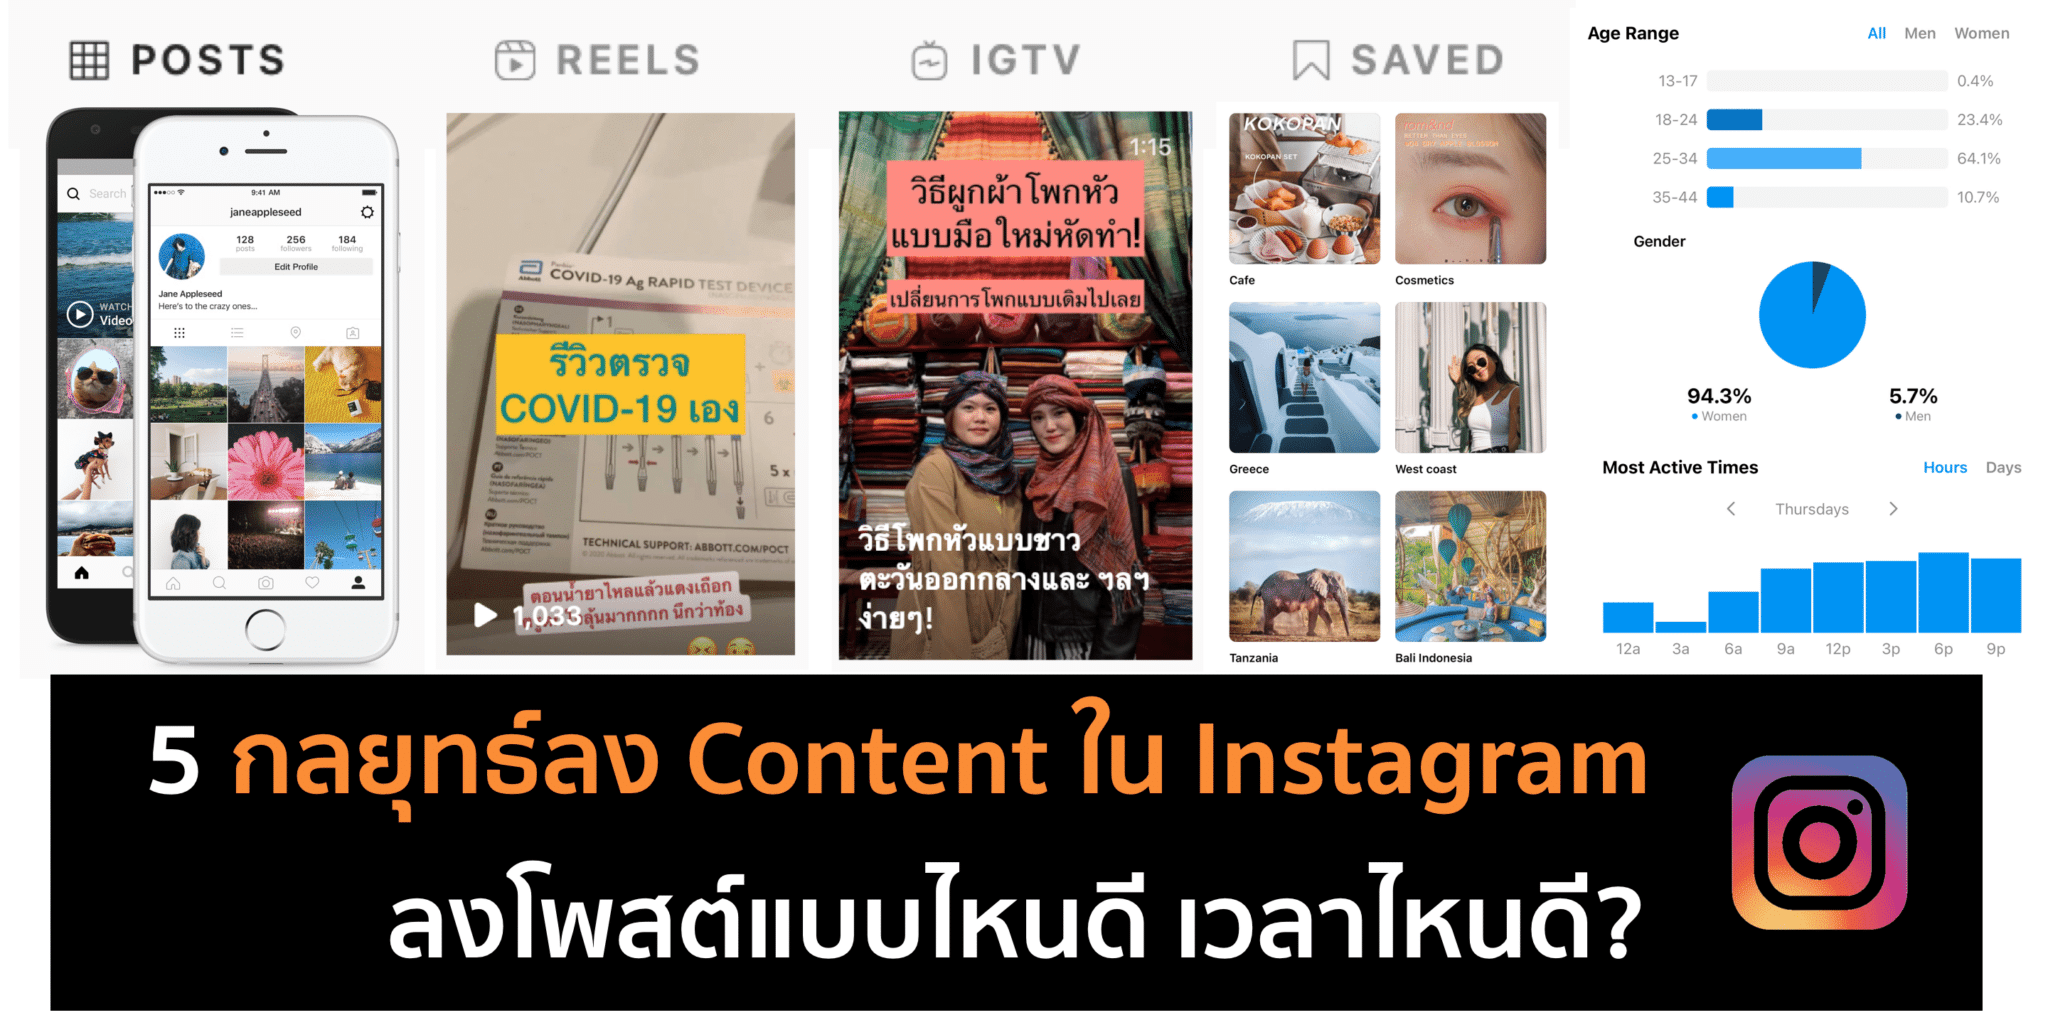 5 กลยุทธ์ลง Content ใน Instagram ยังไง แบบคุณภาพ